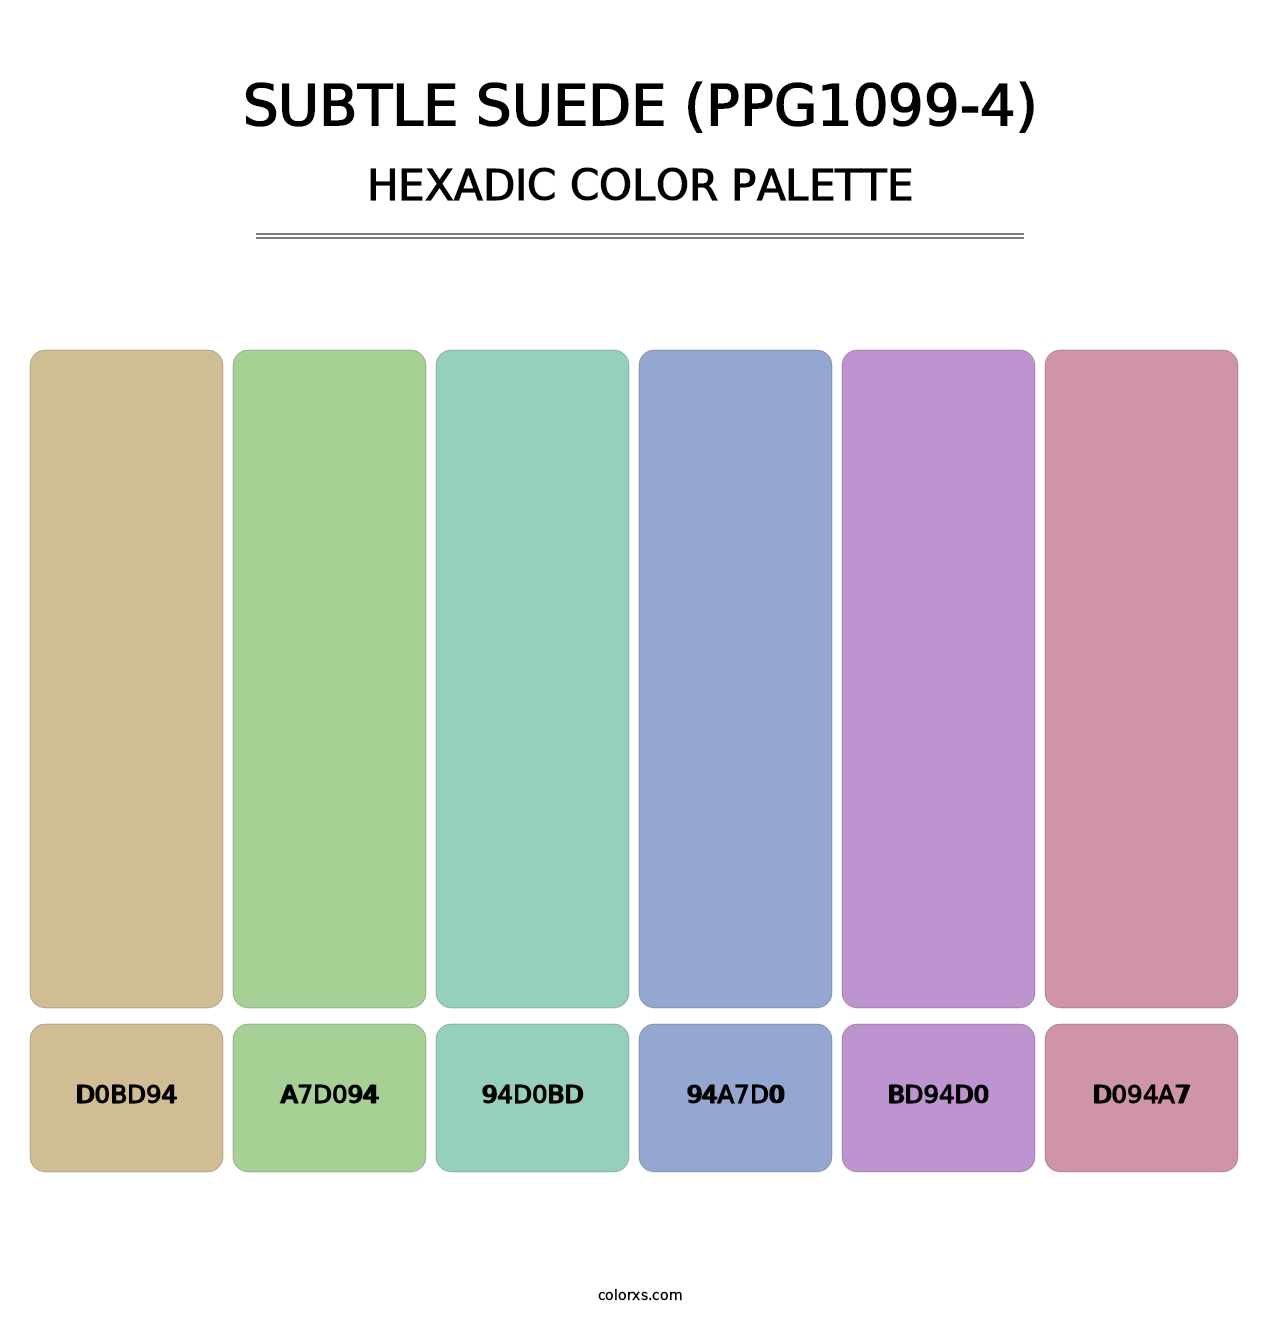 Subtle Suede (PPG1099-4) - Hexadic Color Palette